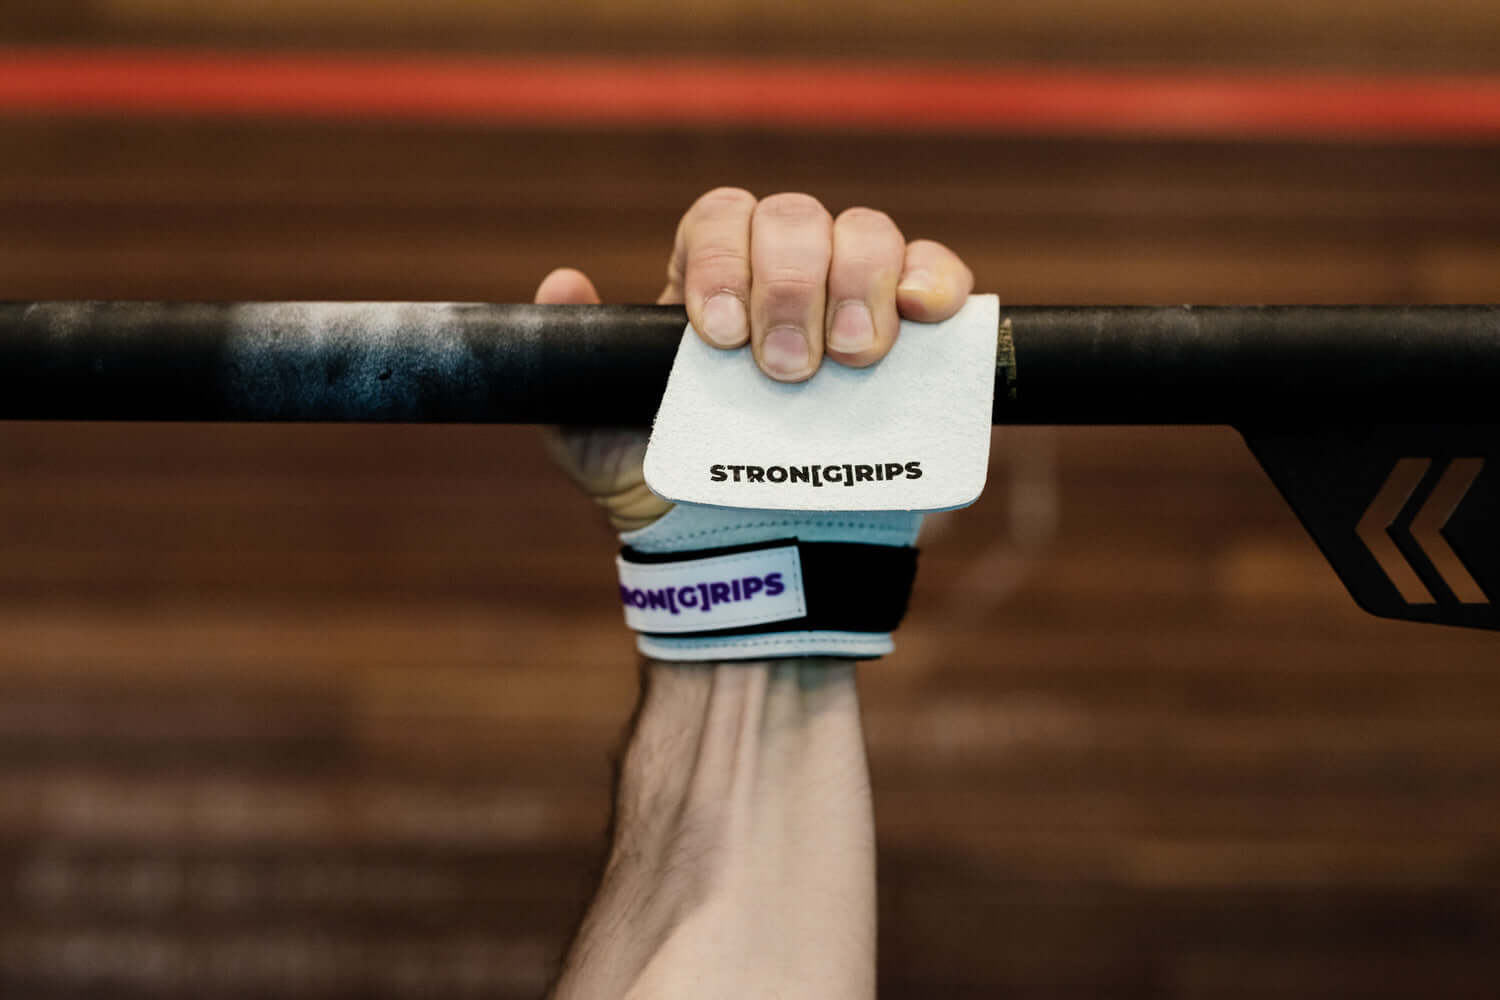 StronGrips ProX Elcikleri ile en zorlu antrenmanlarda elleriniz koruma altında